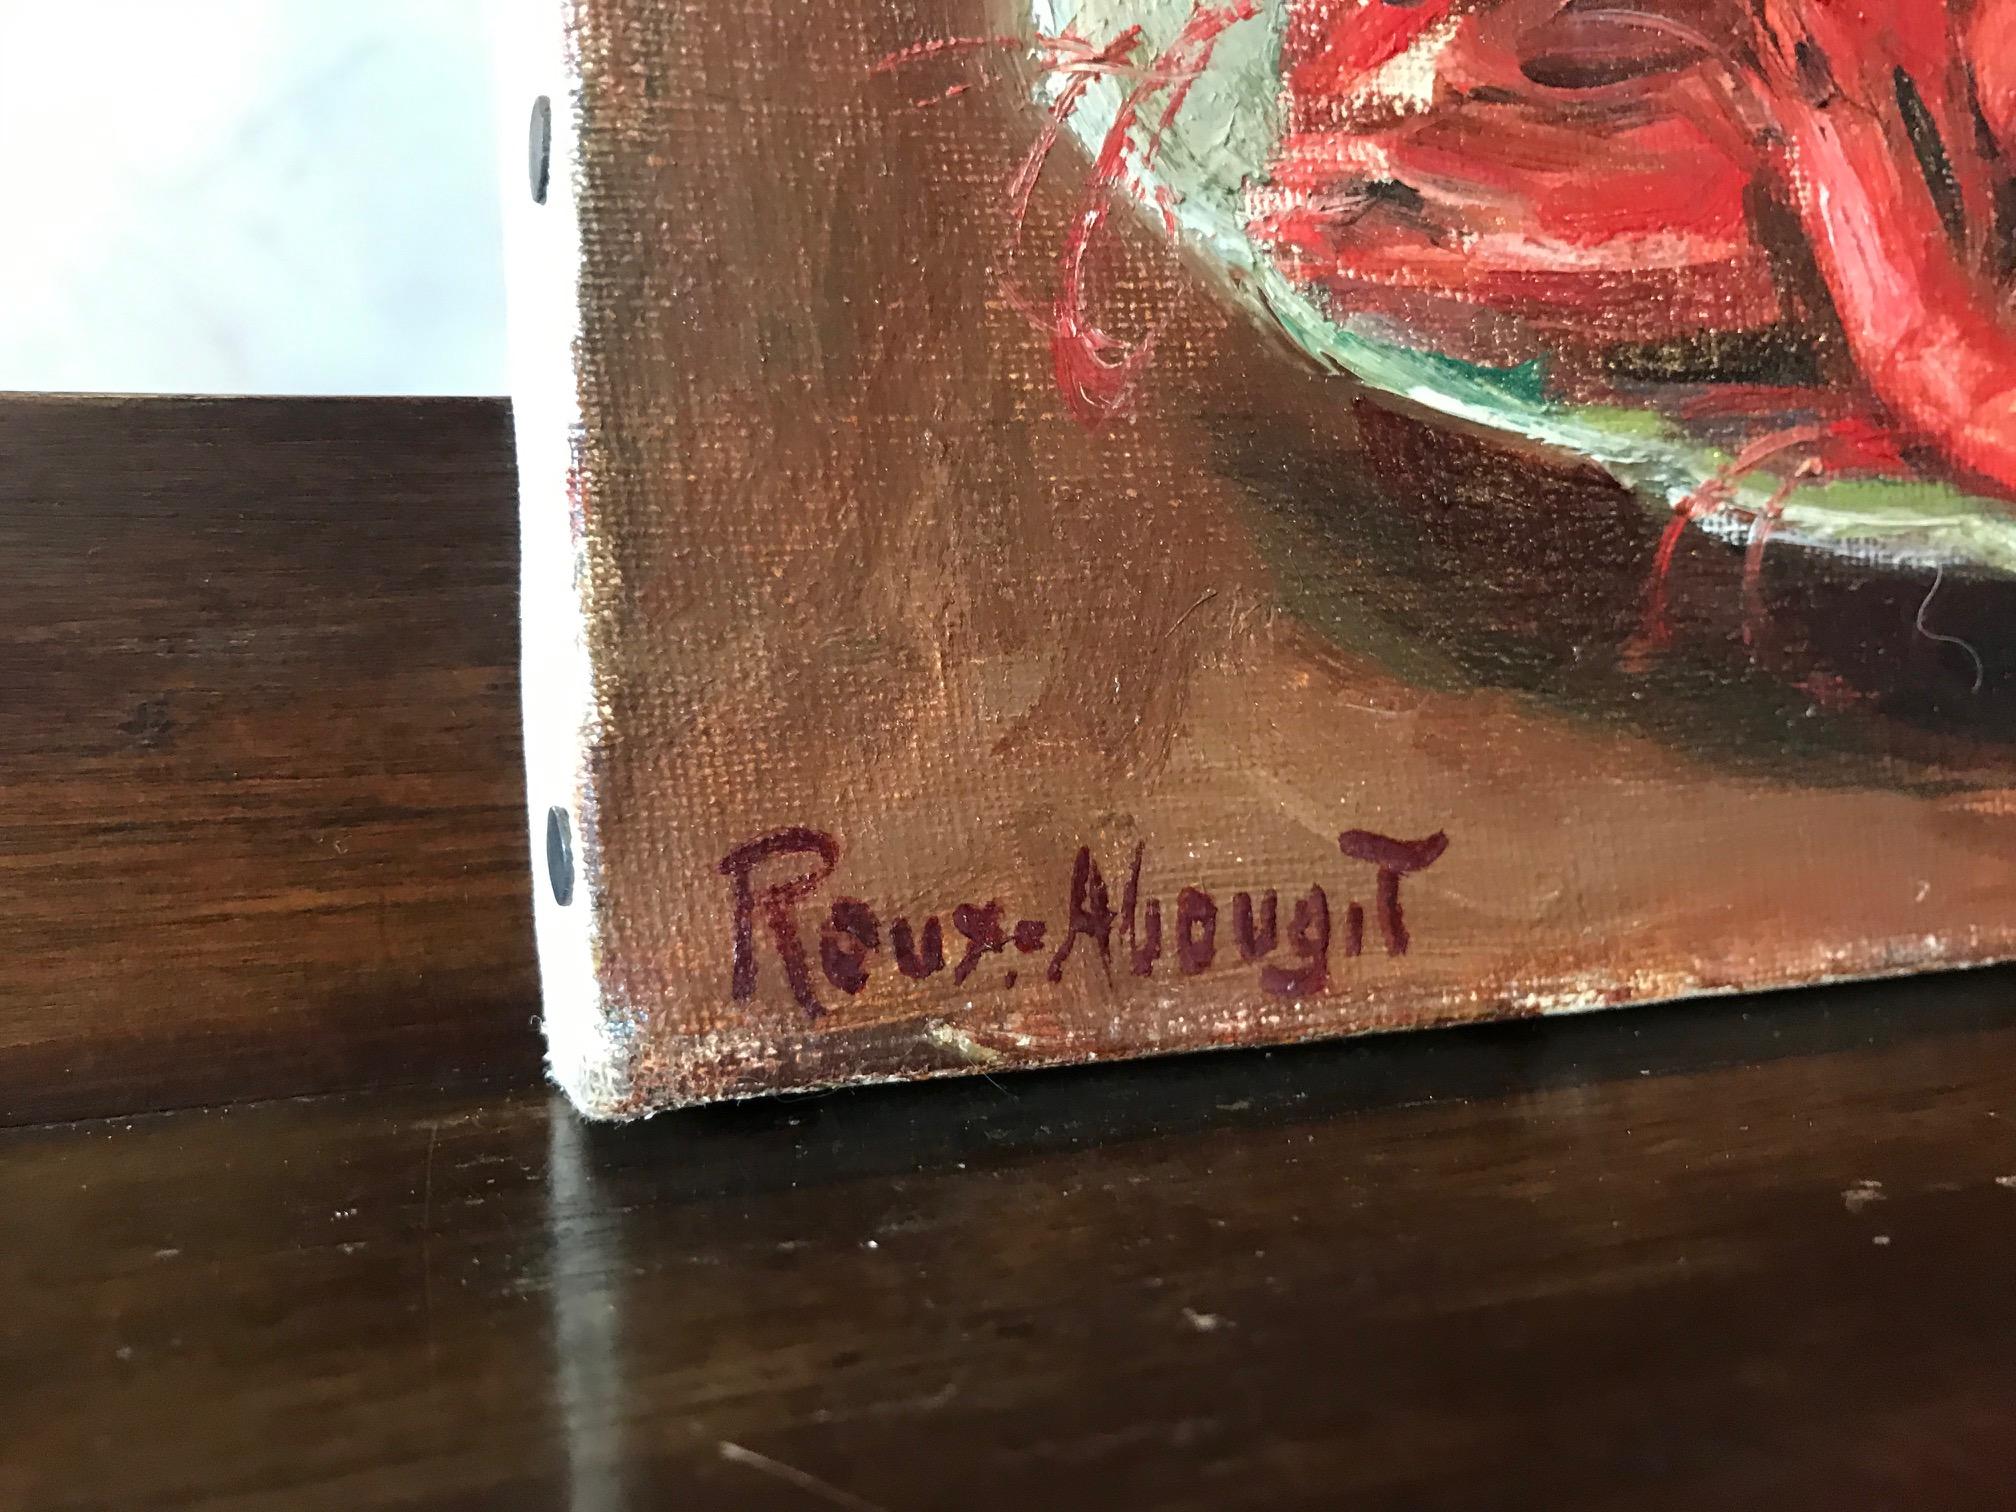 Sehr schönes französisches Stillleben des 20. Jahrhunderts in Öl auf Leinwand Signiert roux abougit aus den 1930er Jahren.
Roux-abougit ist ein französischer Maler aus Lyon (Südostfrankreich).
Dieses Bild zeigt einen Teller mit Garnelen, eine